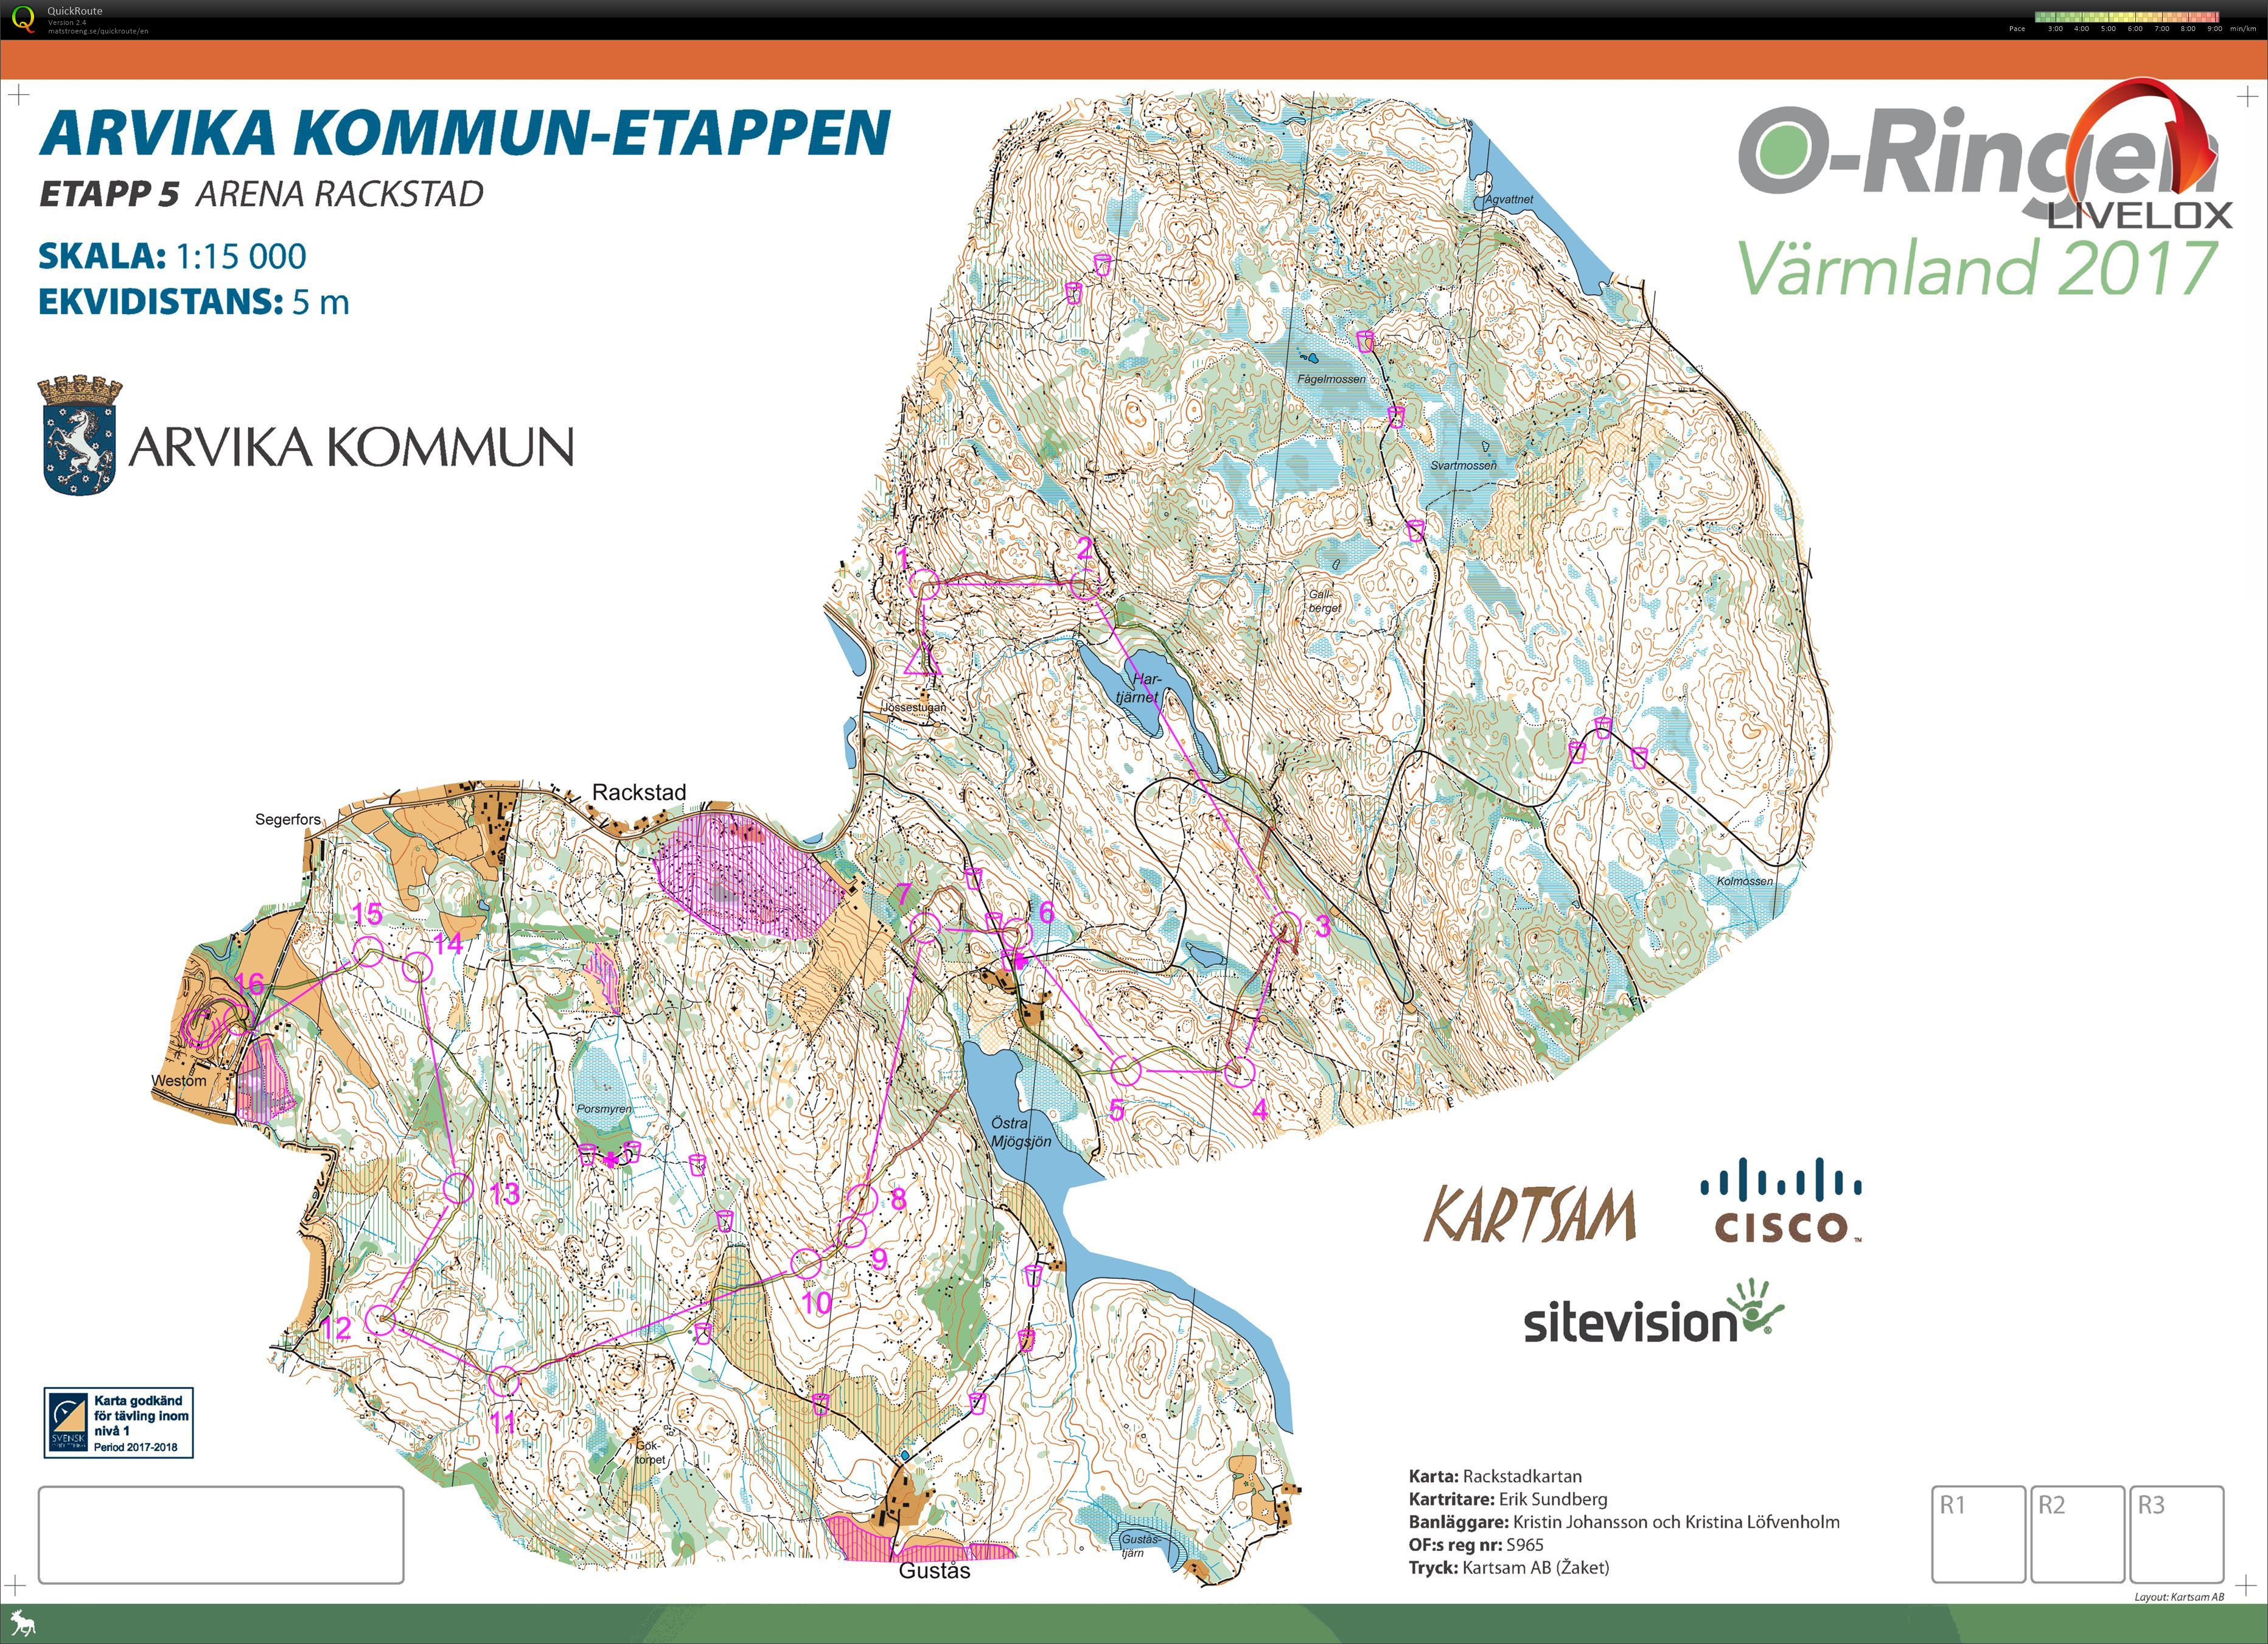 O-ringen etappe 5 Arvika Kommun-etappen (28.07.2017)